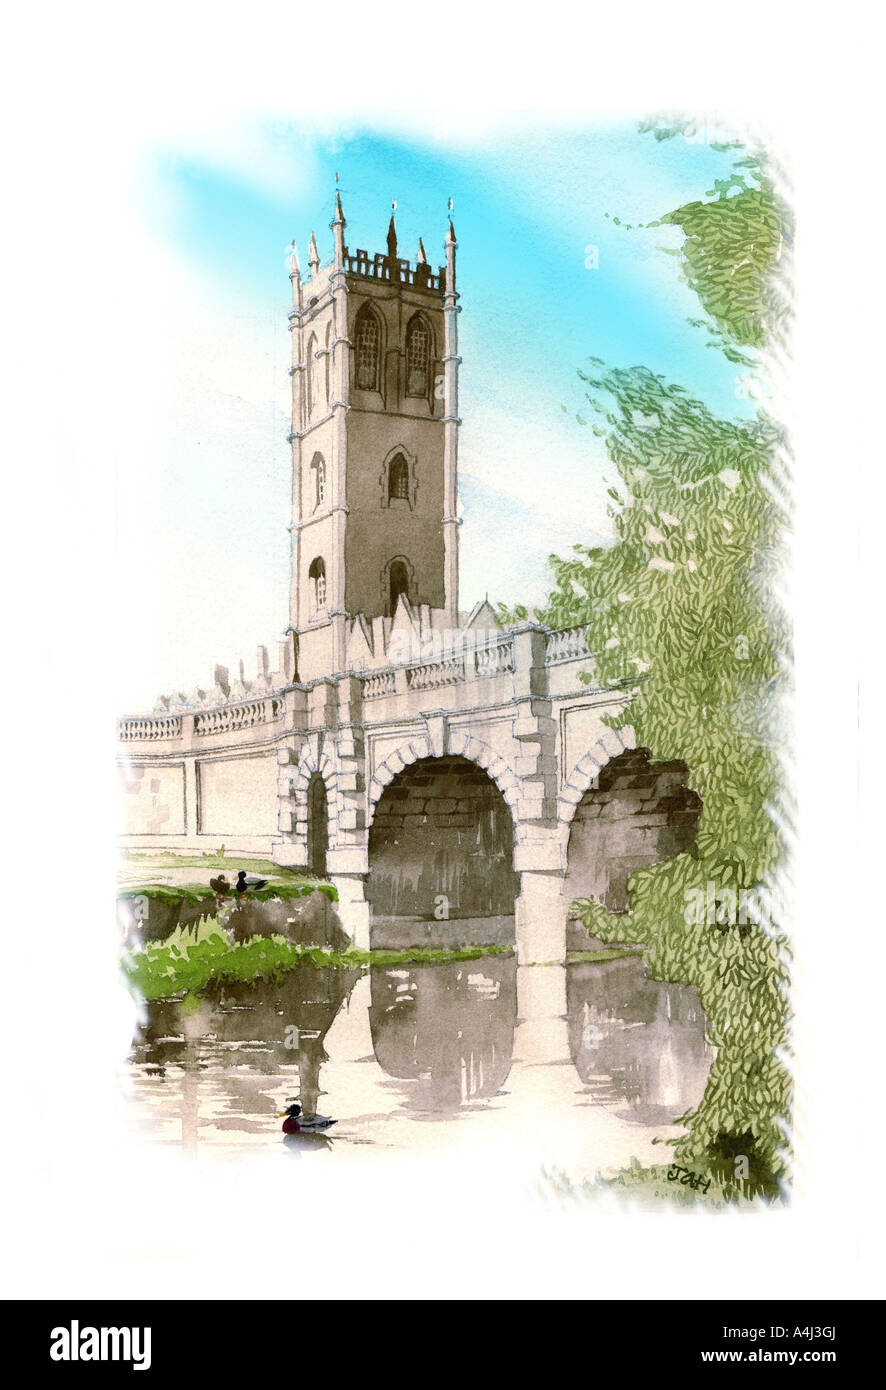 Couleur de l'eau peinture de Magdalen College et Tour du pont de la Madeleine avec vue sur la rivière Cherwell, Oxfordshire, Angleterre, Europe Banque D'Images